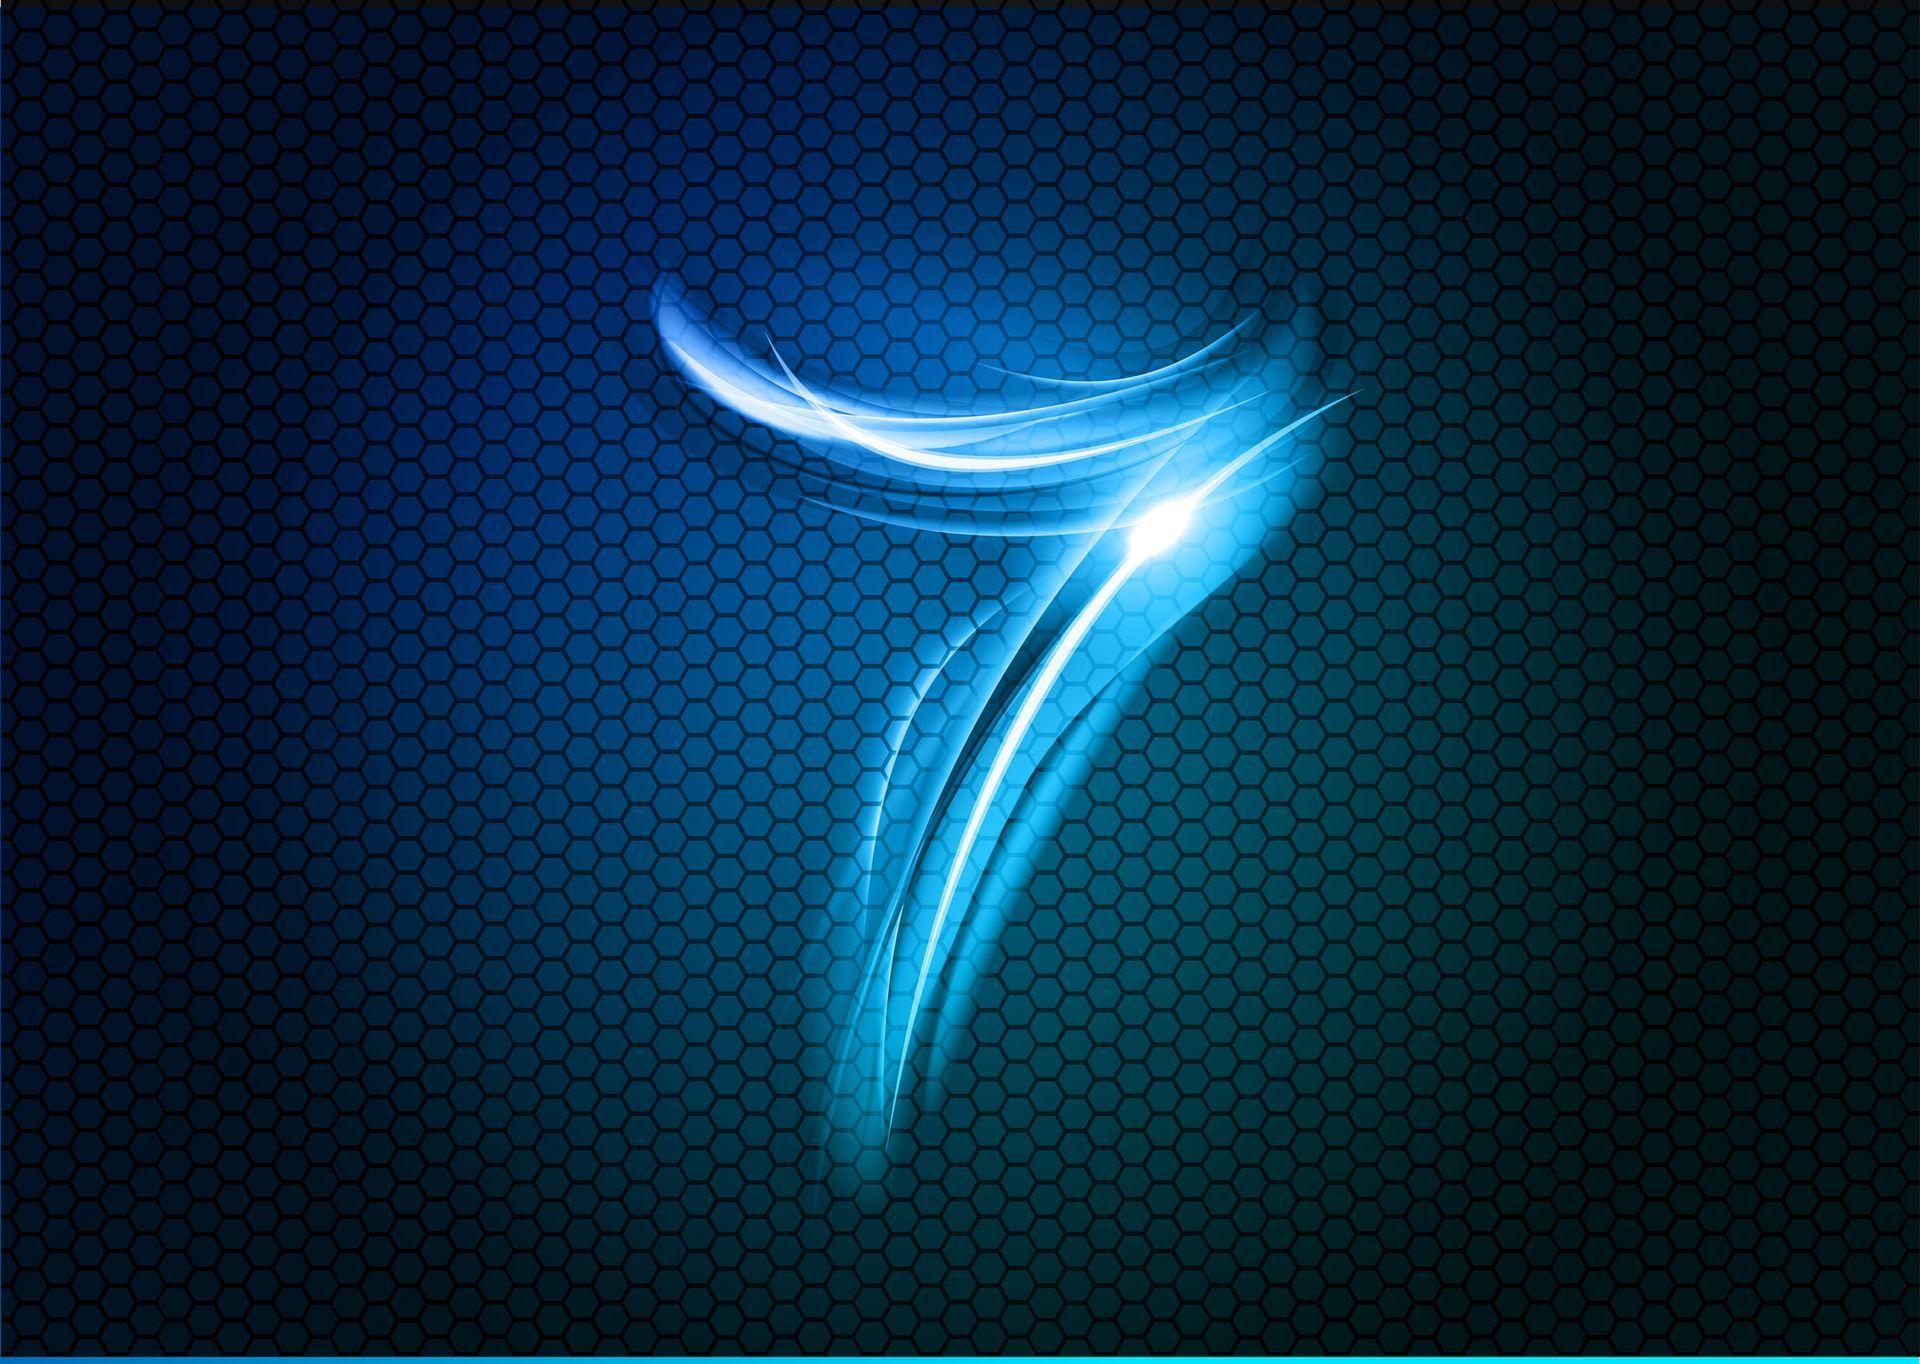 het oneven getal zeven in een blauwe, lichtgevende kleur op een donkerblauwe achtergrond  bestaande uit honingraatvormen.